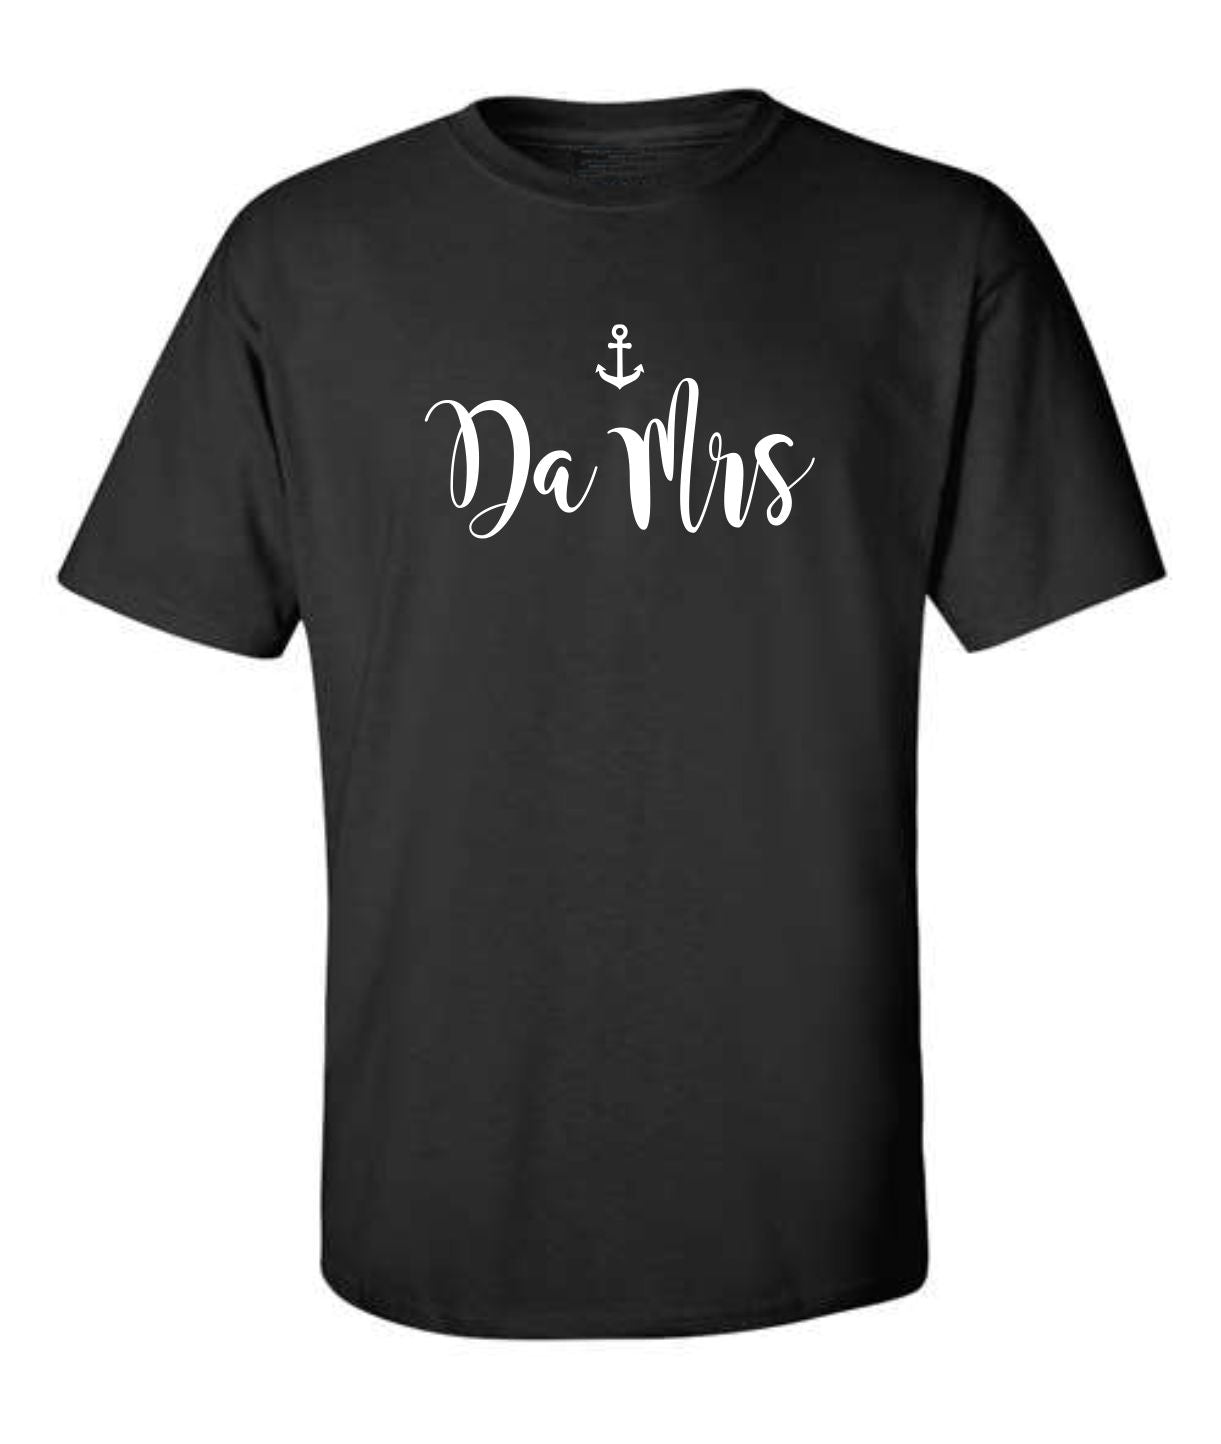 "Da Mrs" T-Shirt